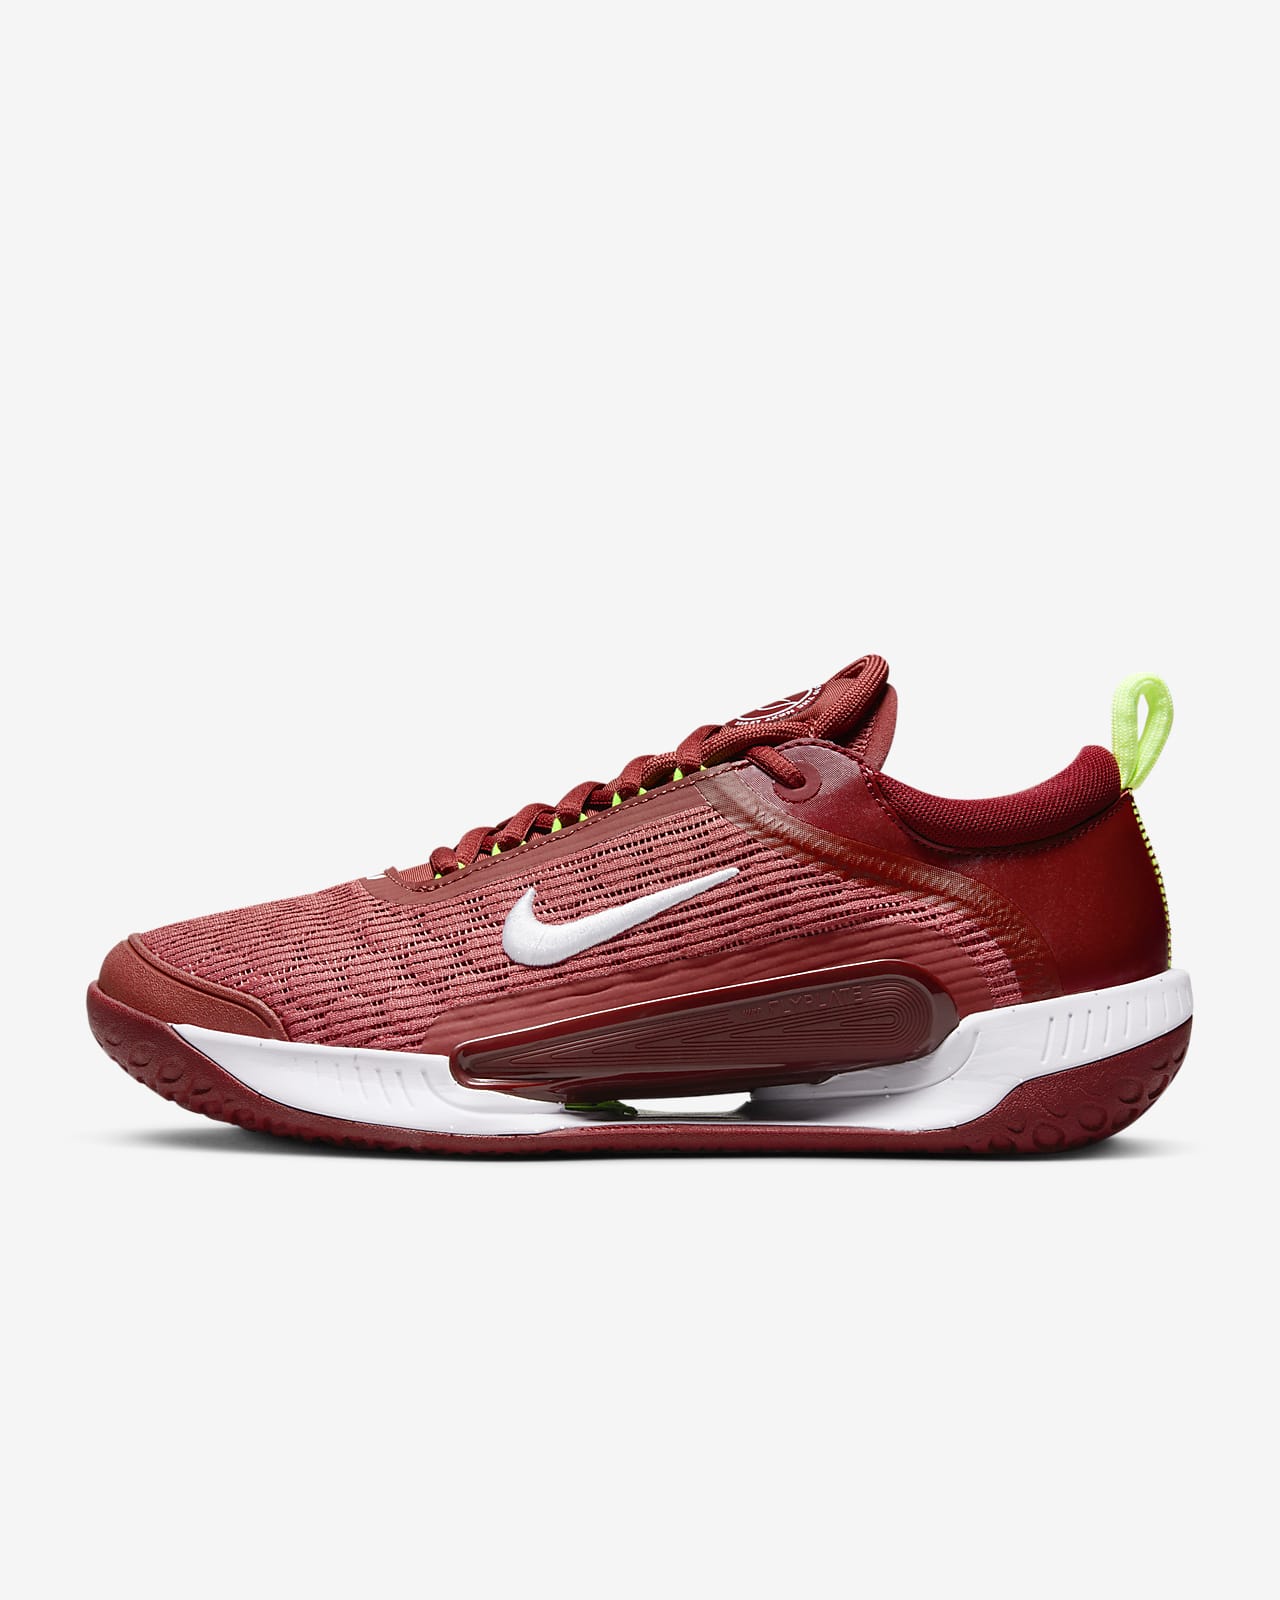 Nike Men's Air Zoom NXT Tennis Shoes Cedar/Team Red, Size 11.5